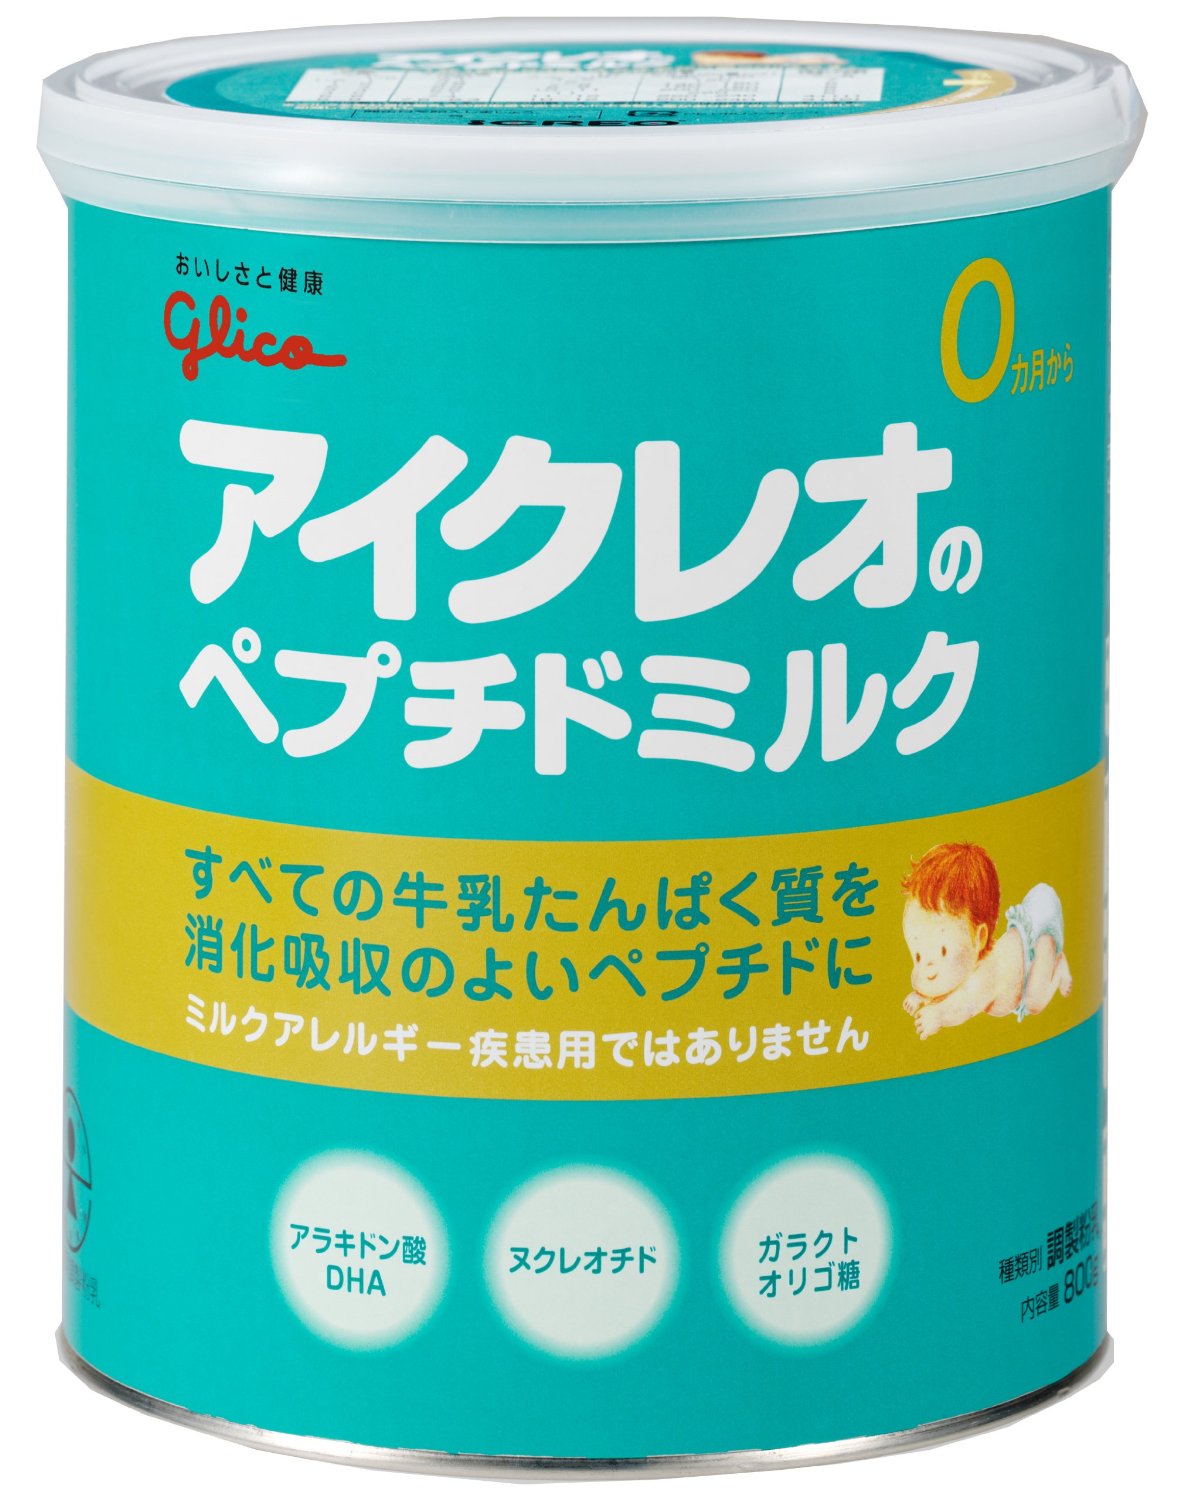 日本代购原装进口固力果婴儿牛奶粉抗过敏奶粉防腹泻正品8罐直邮